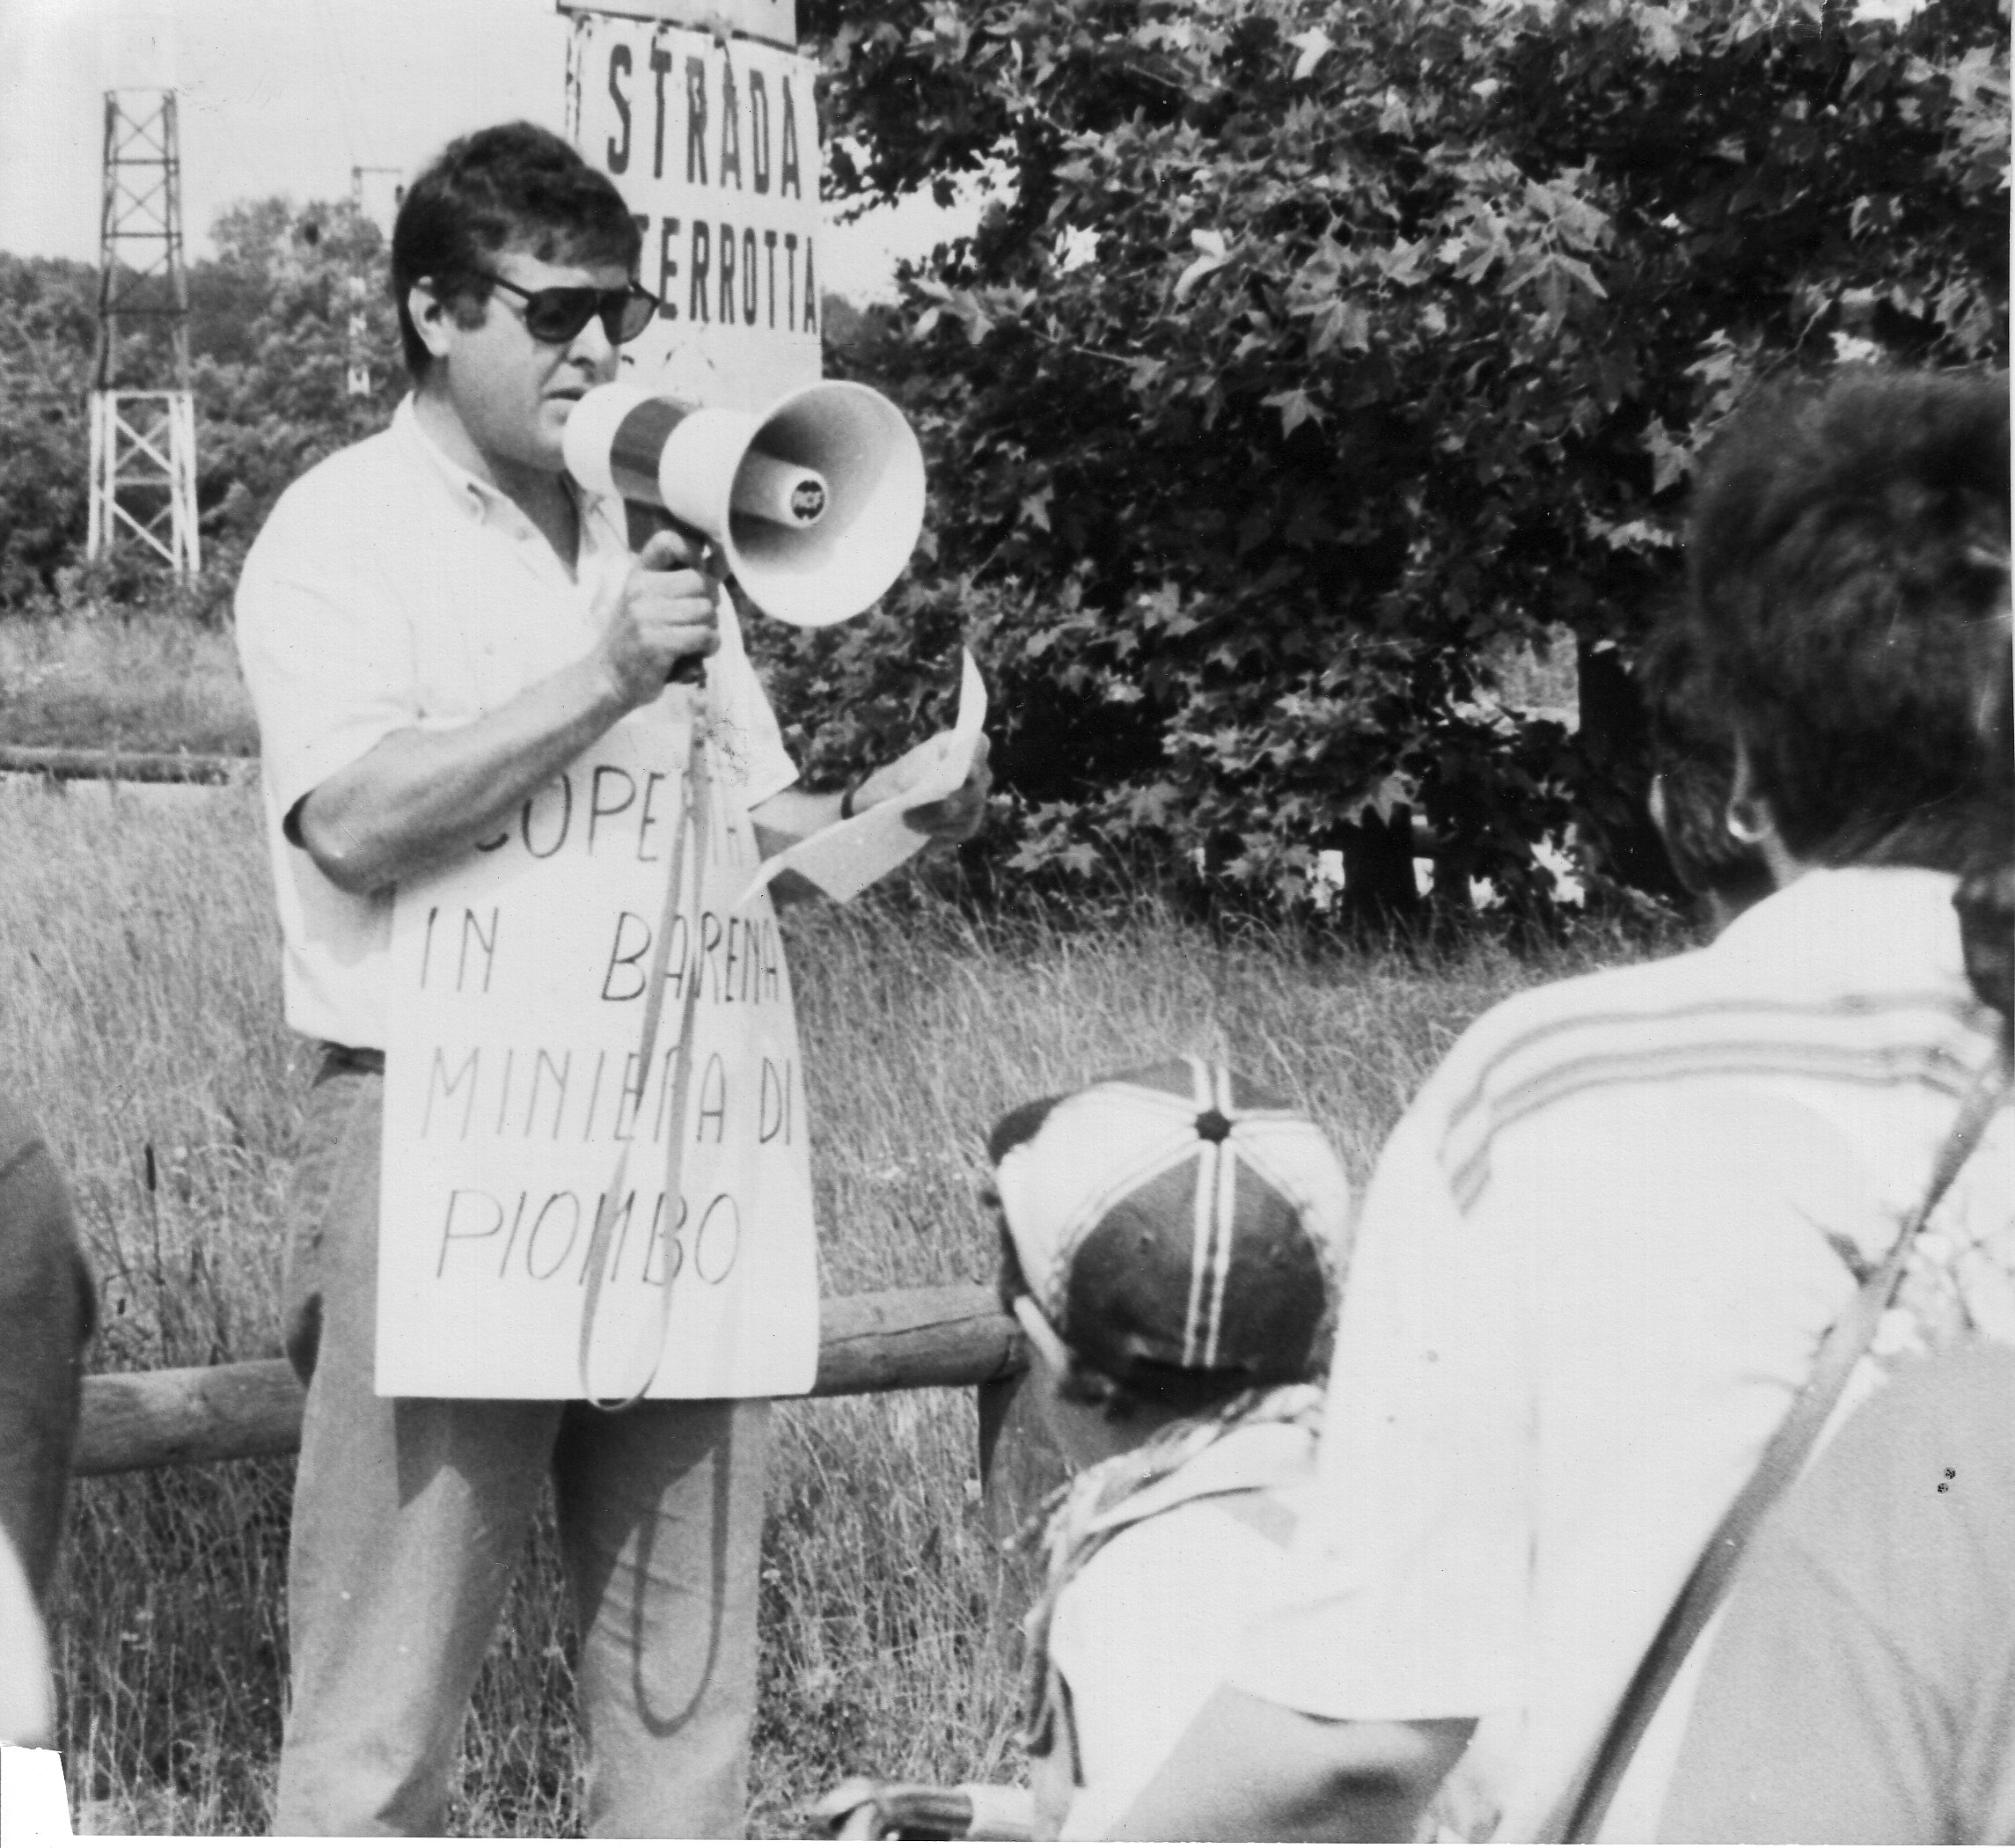 La ribellione di Campalto (16 giugno 1986) contro la gestione ambientale del territorio.